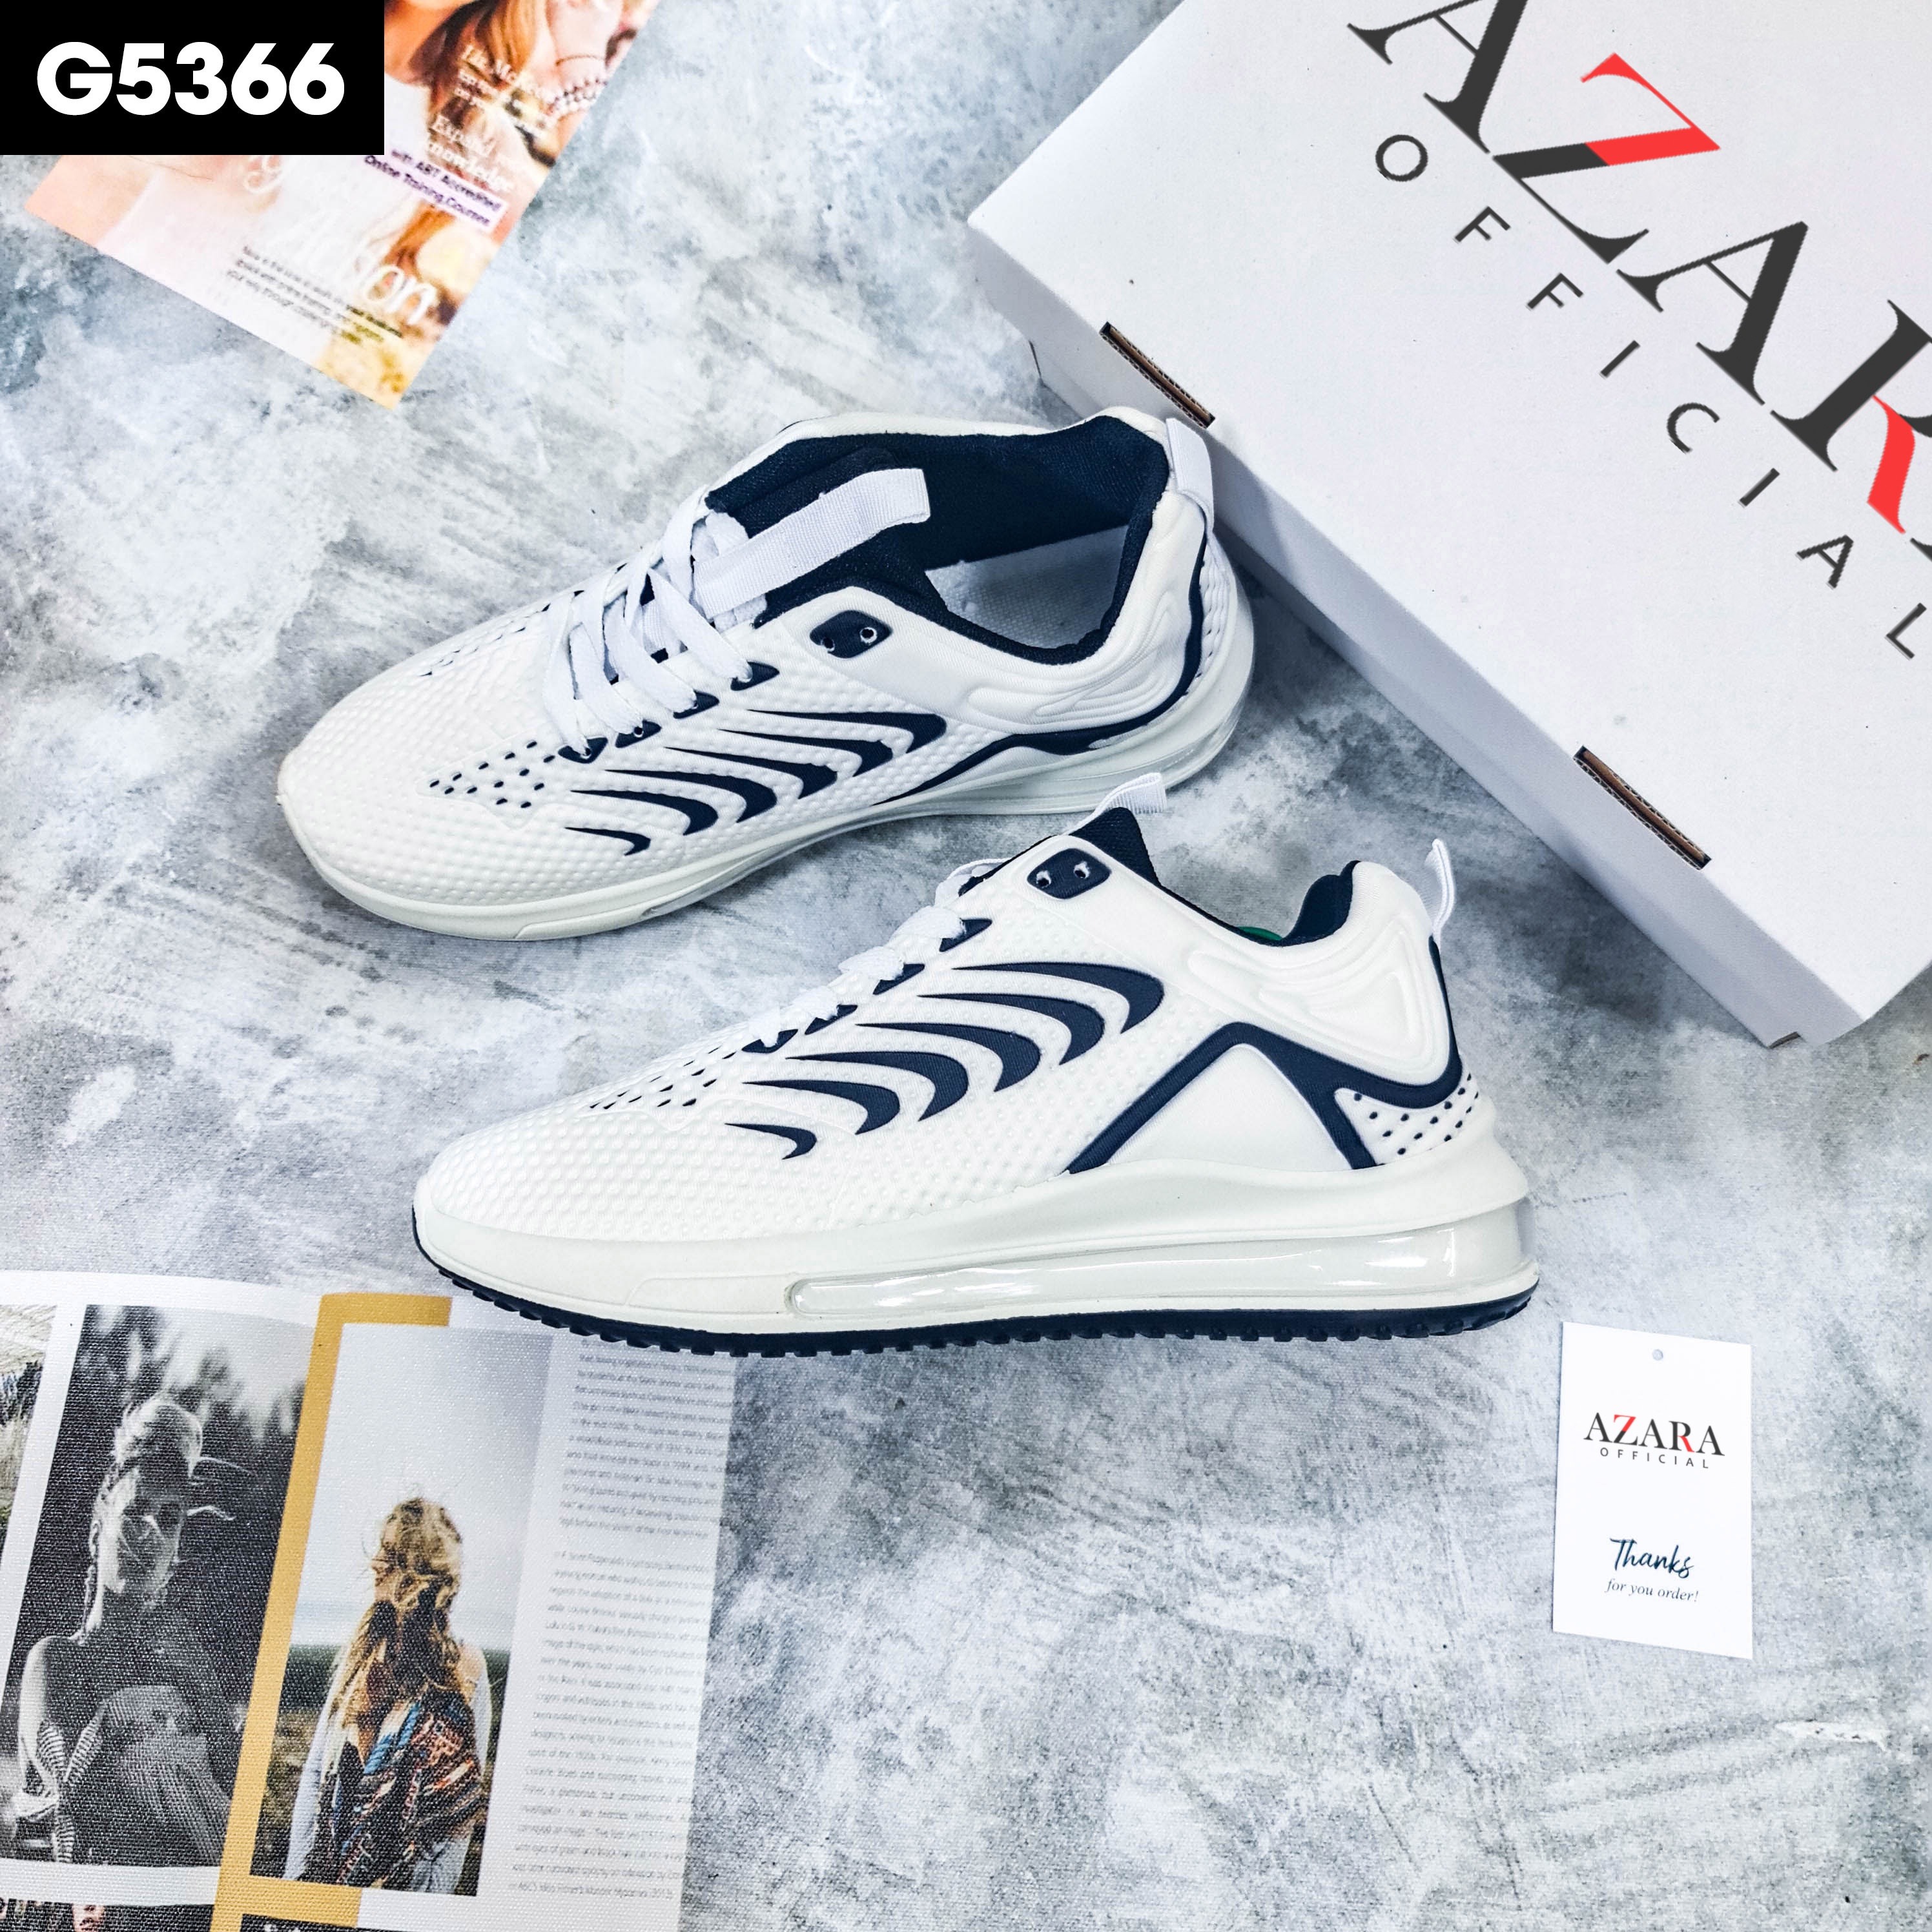 Giày Thể Thao Nam AZARA- Giày Sneaker Màu Đen, Giày Thoáng Khí Cao Cấp, Đế Xốp Nhẹ, Phù Hợp Mọi Lứa Tuổi - G5361